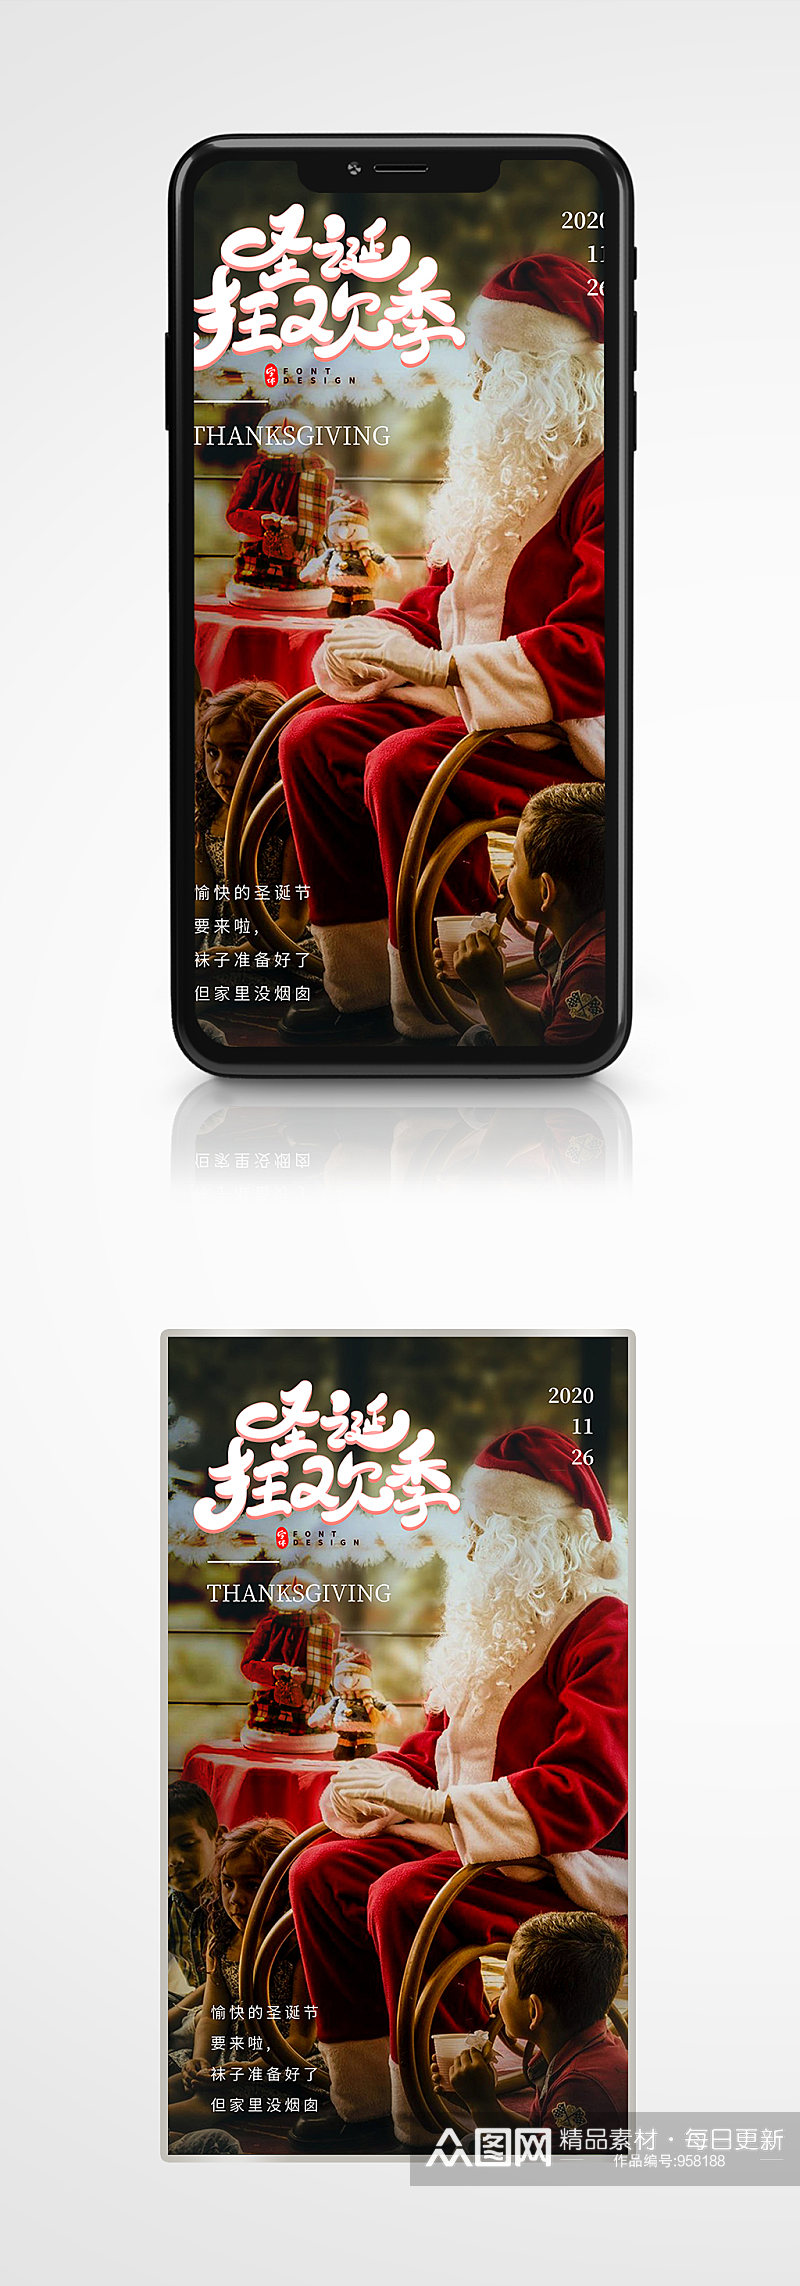 圣诞节圣诞老人宣传手机端海报素材